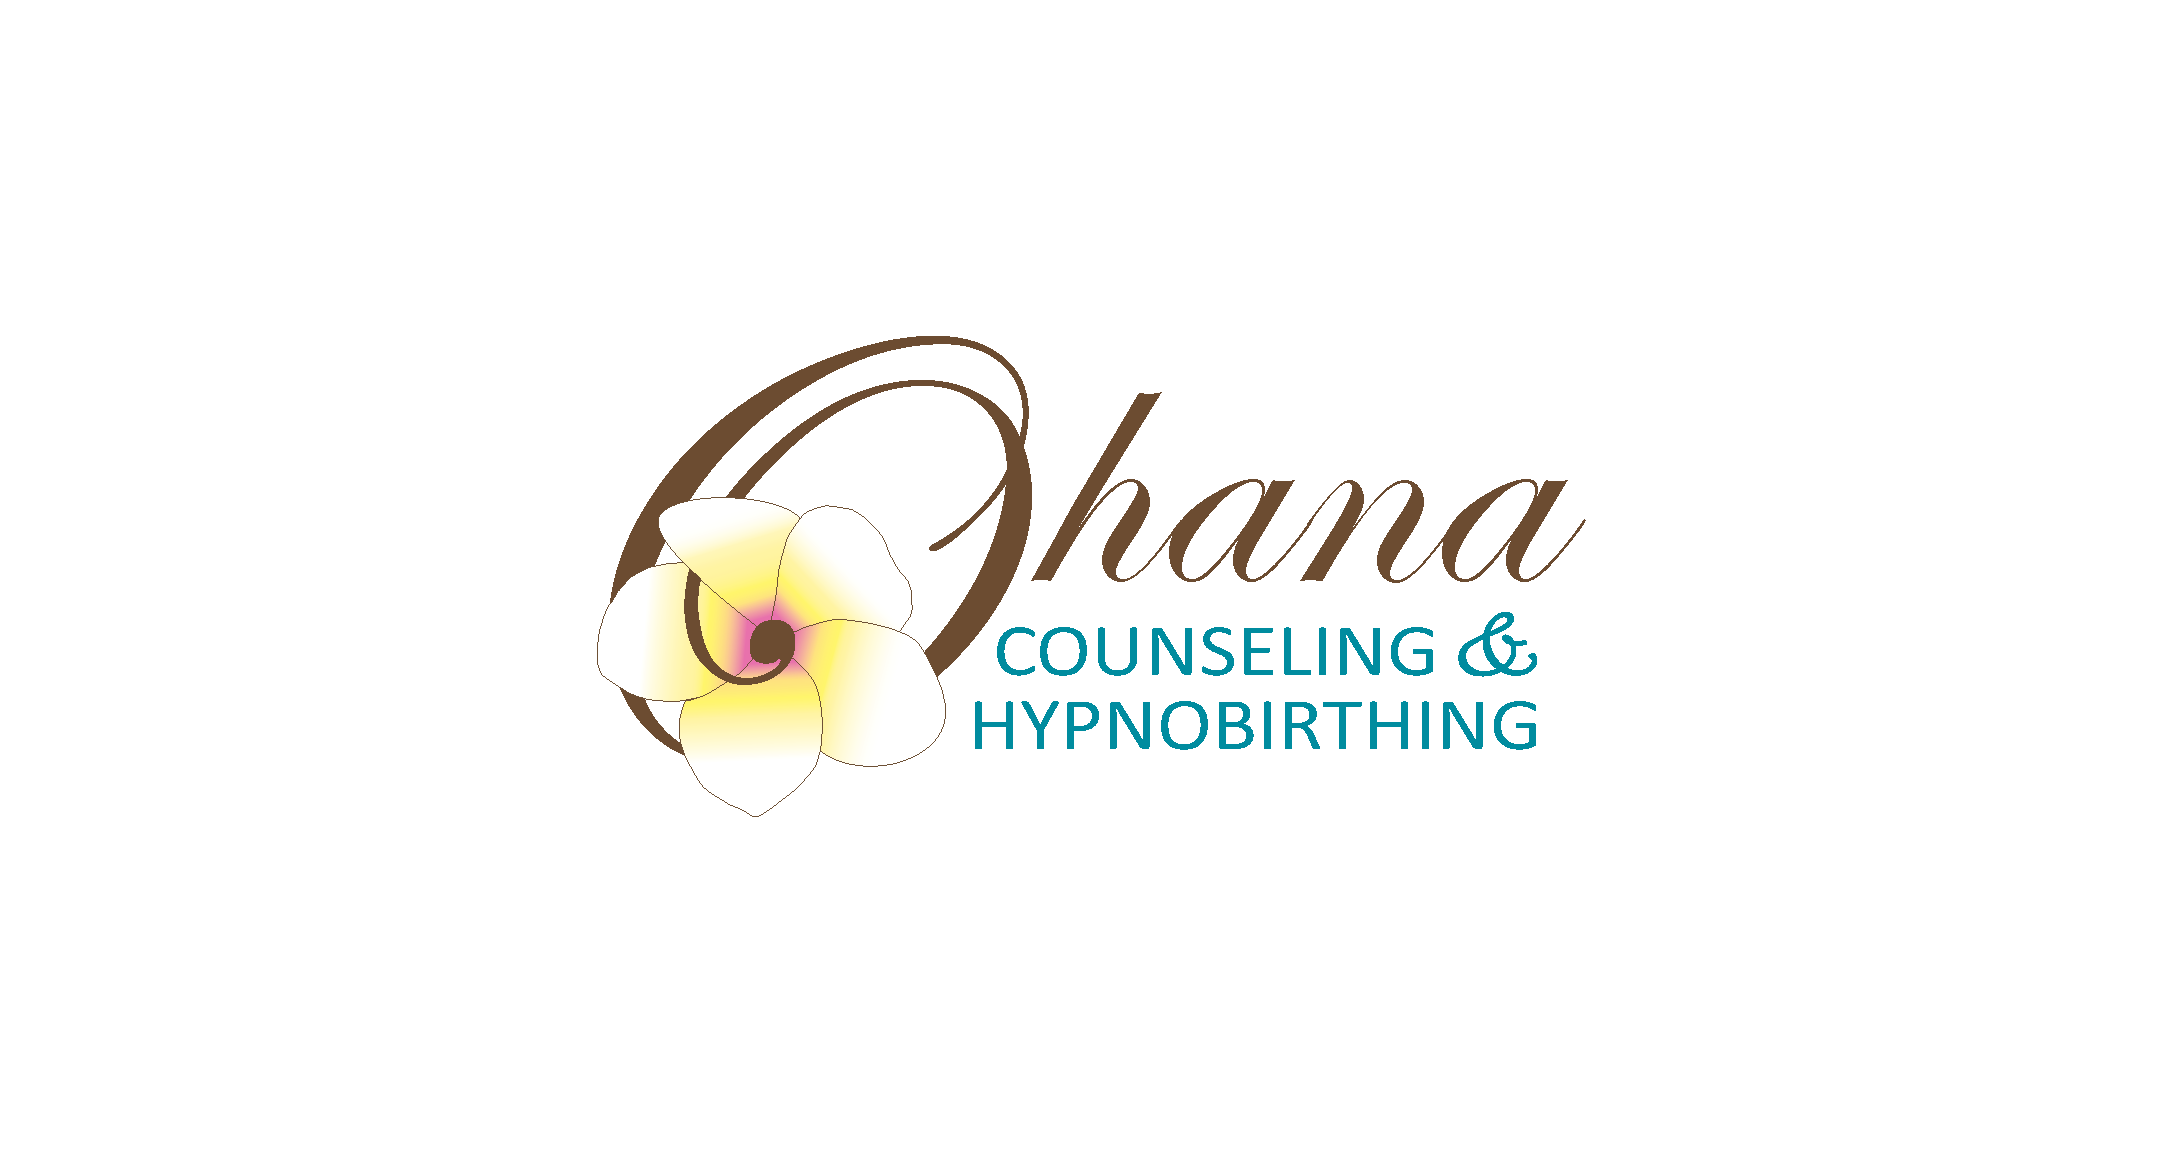 Ohana Counseling & HypnoBirthing - Monica Wong